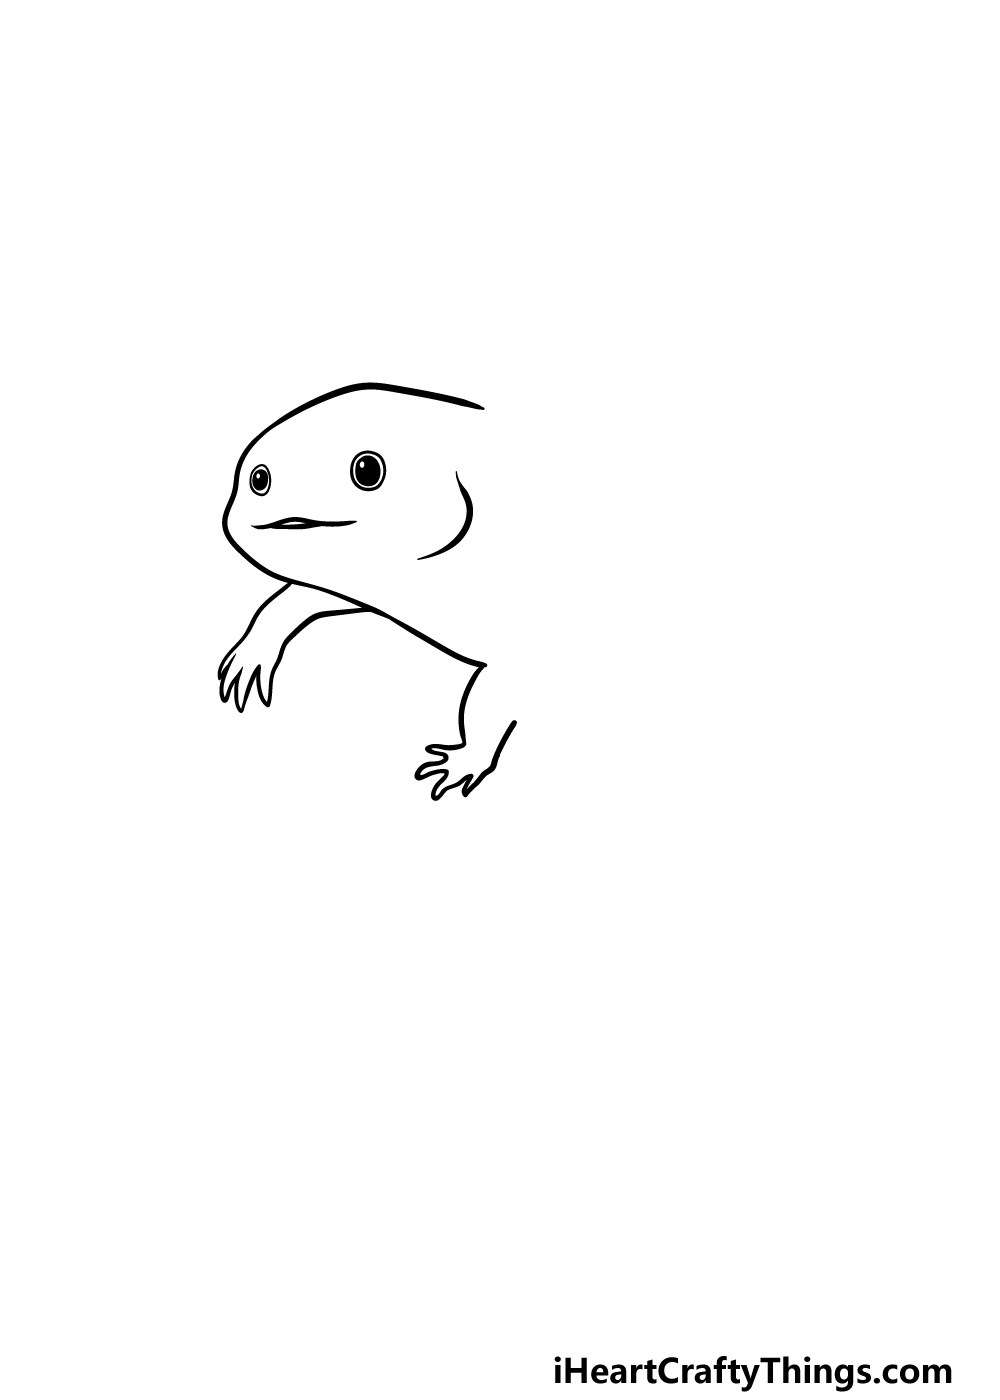 Drawing Axolotl step 2